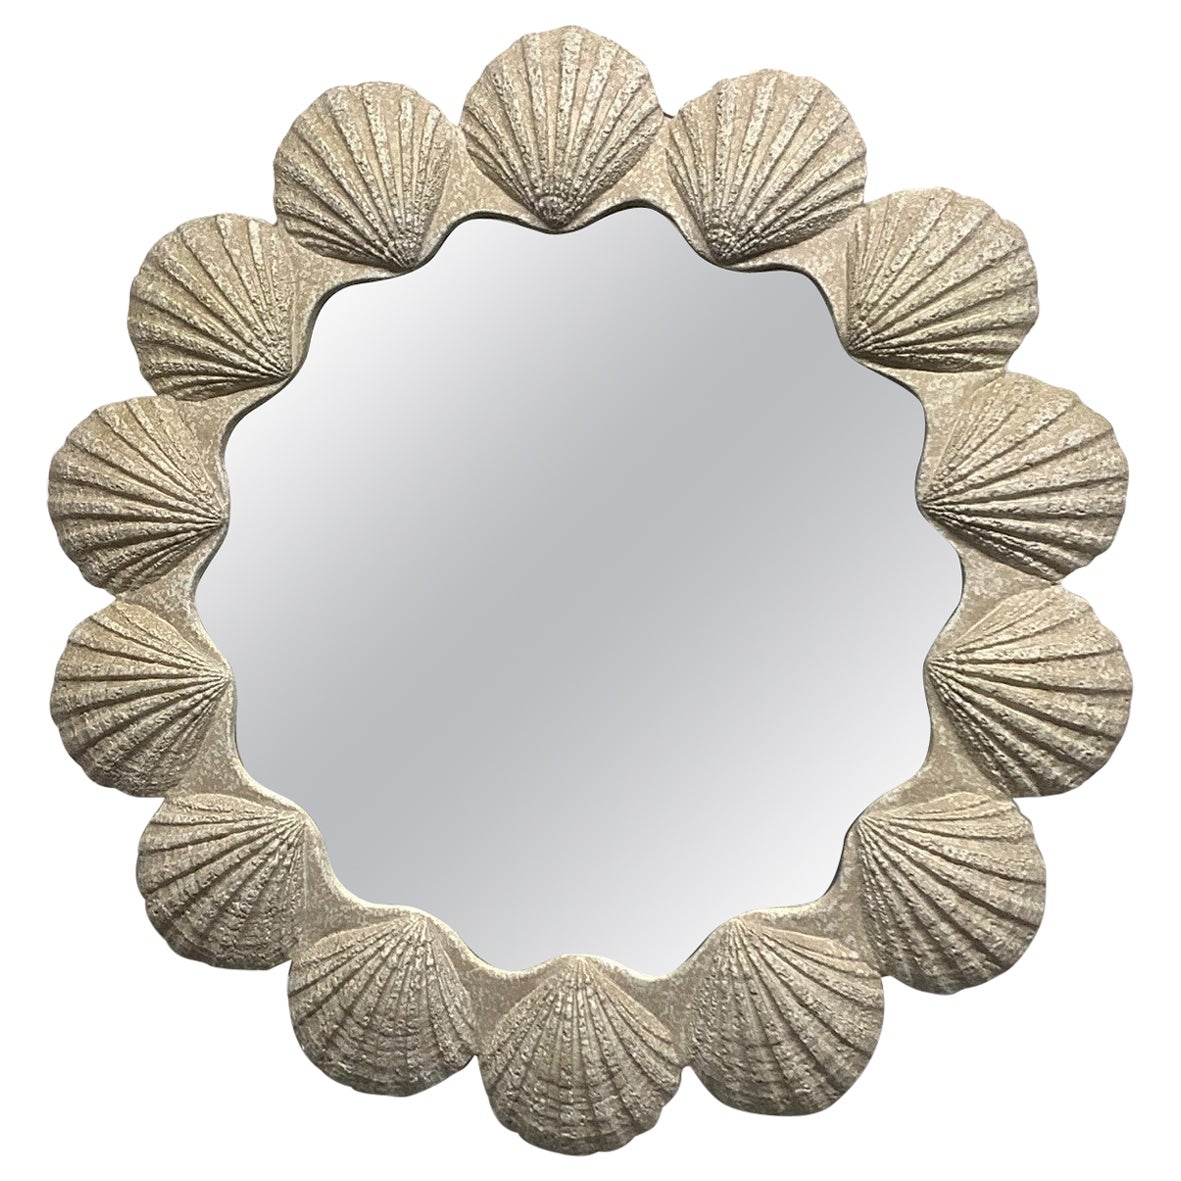 Grand miroir en forme de coquille en plâtre